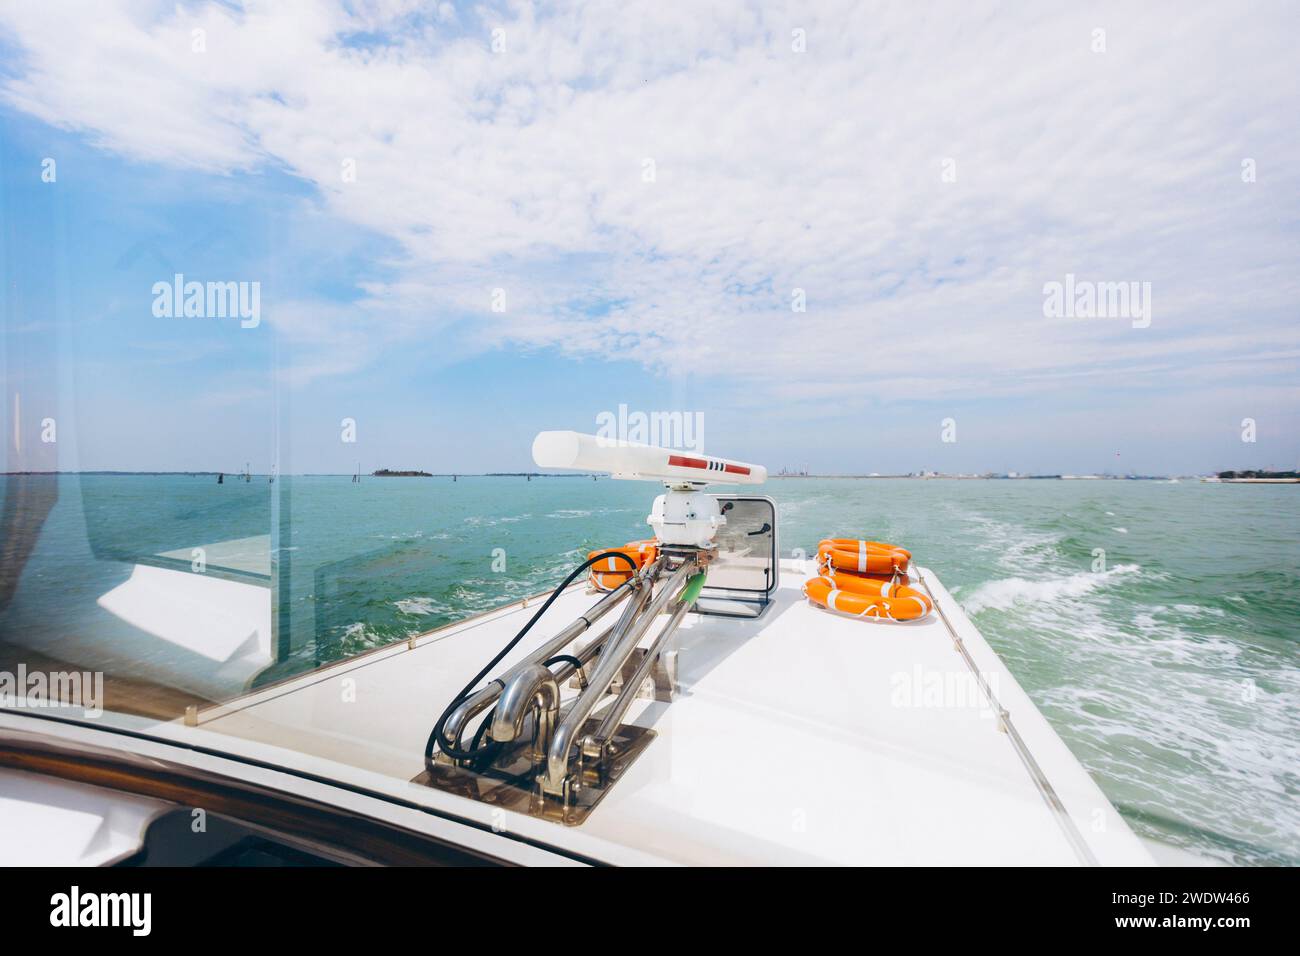 Bateau de mer Venise Voyage d'industrie. Photo de haute qualité Banque D'Images